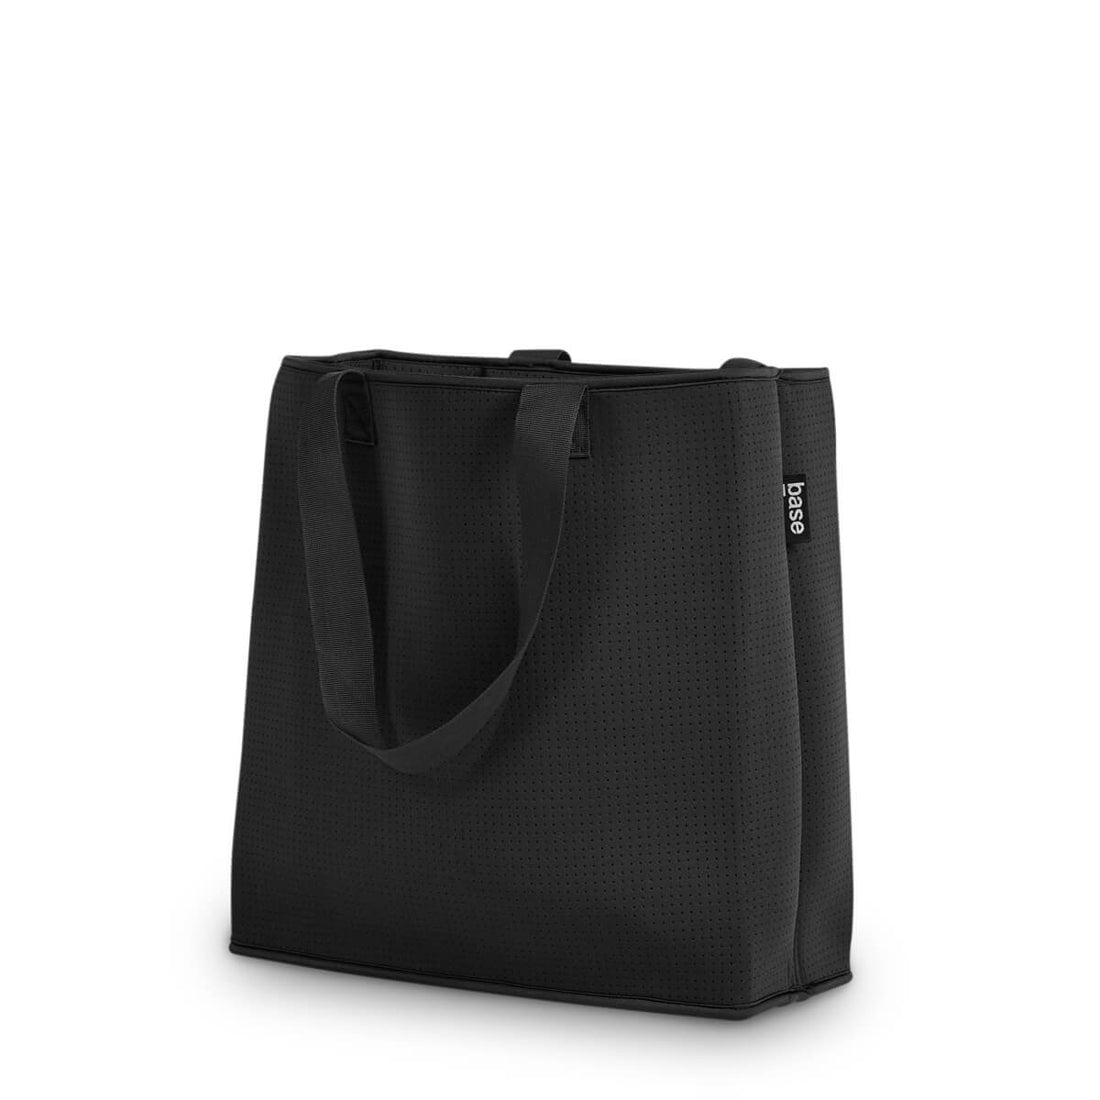 Black neoprene bag from side